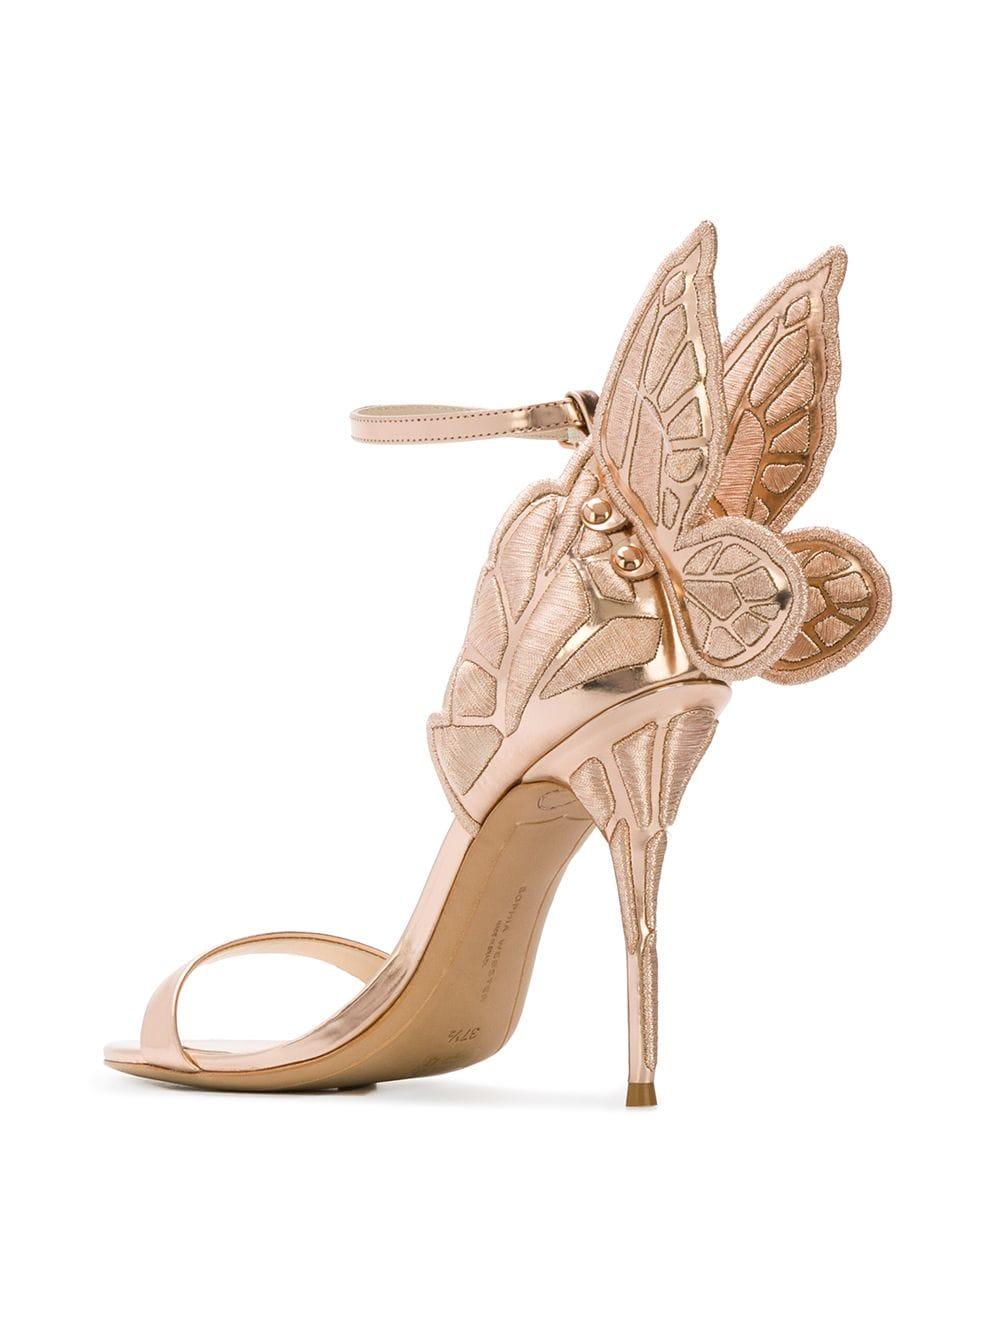 Sophia Webster Leather Butterfly Heel Sandals in Pink - Lyst